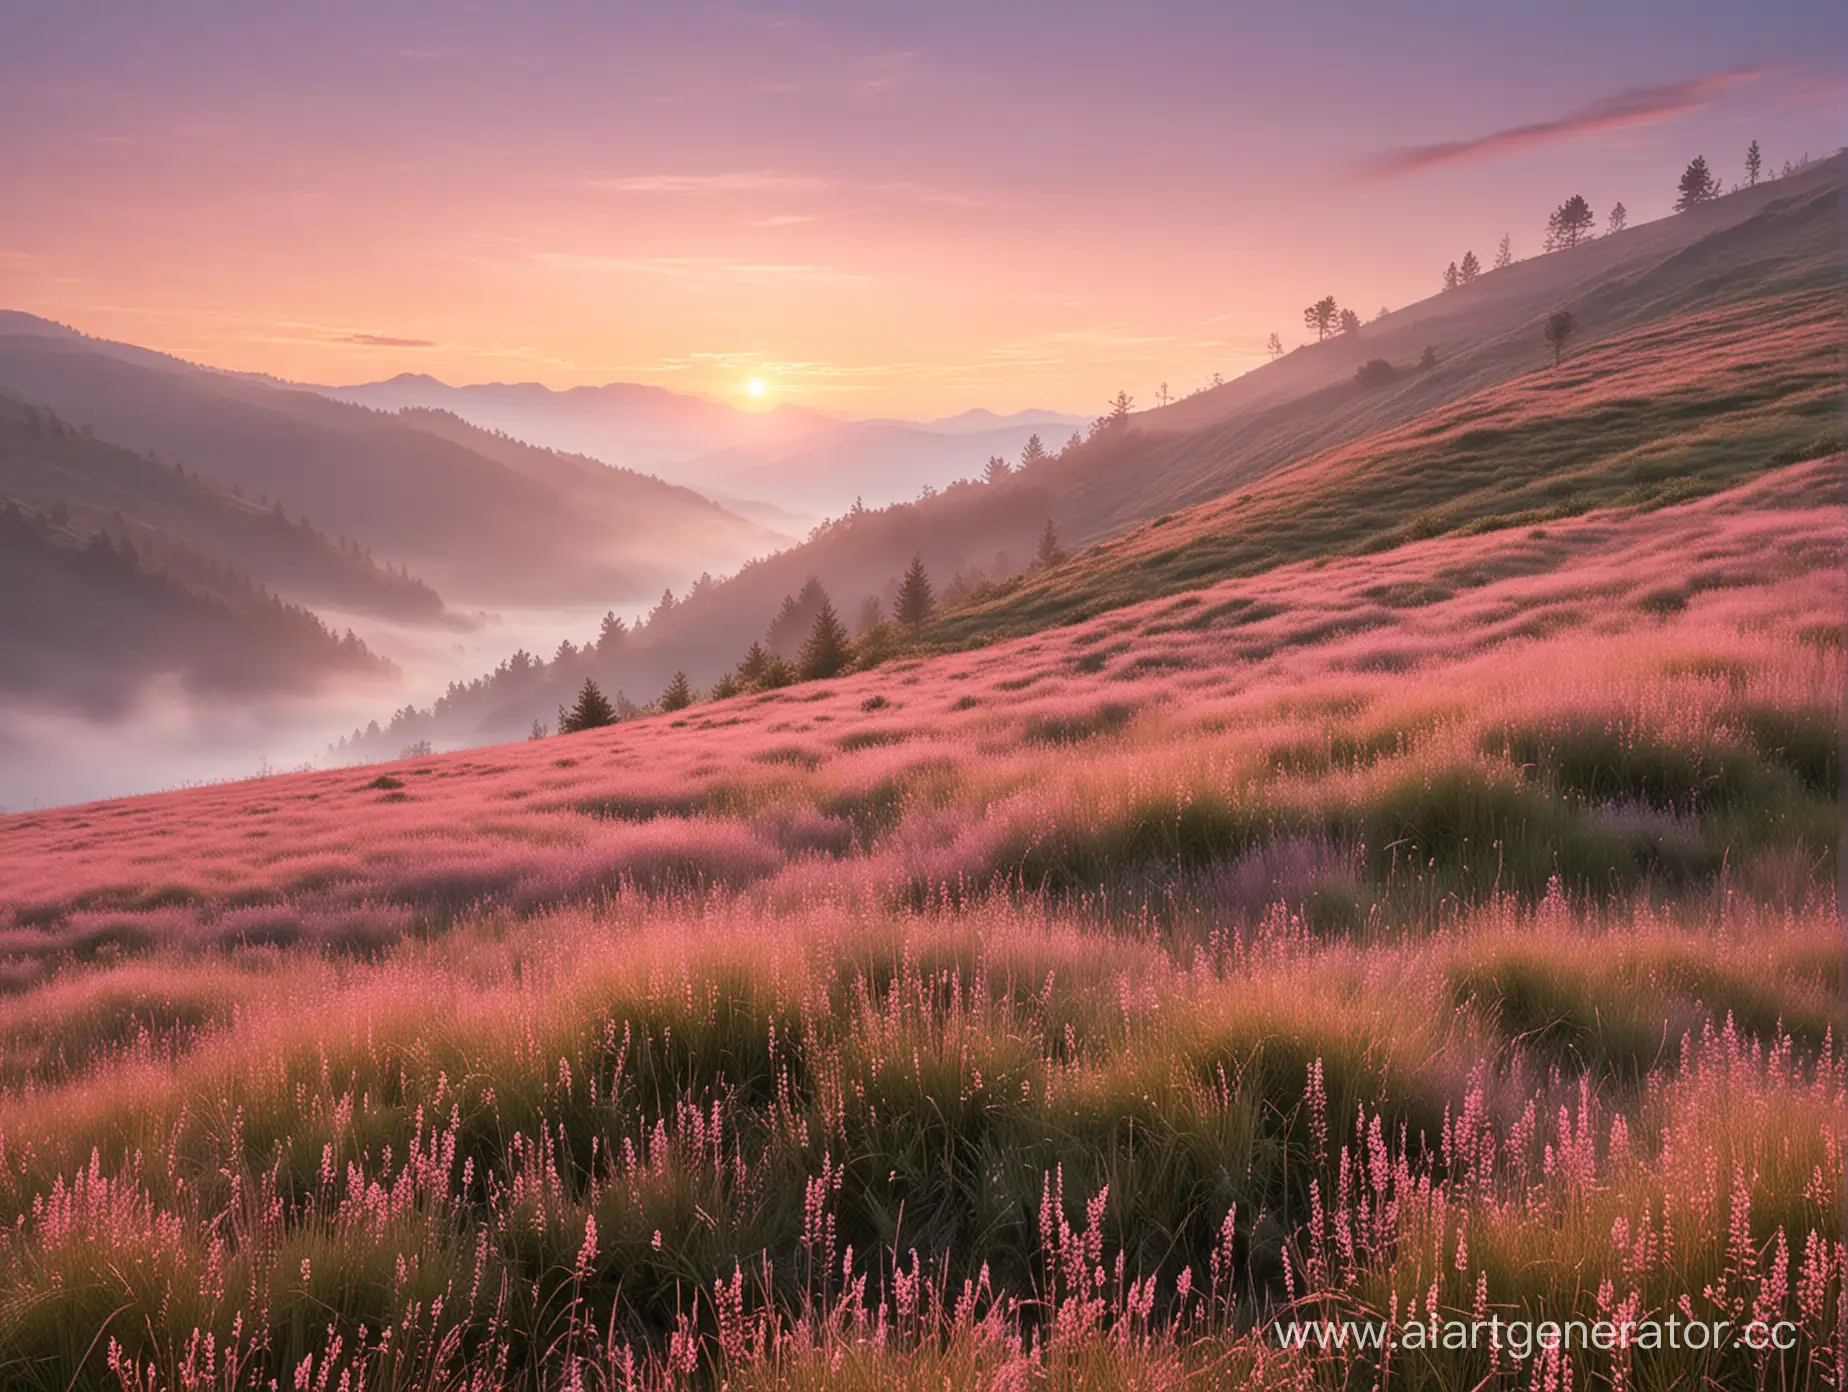 Пологие склоны, горные травы, розовый закат, легкий туман